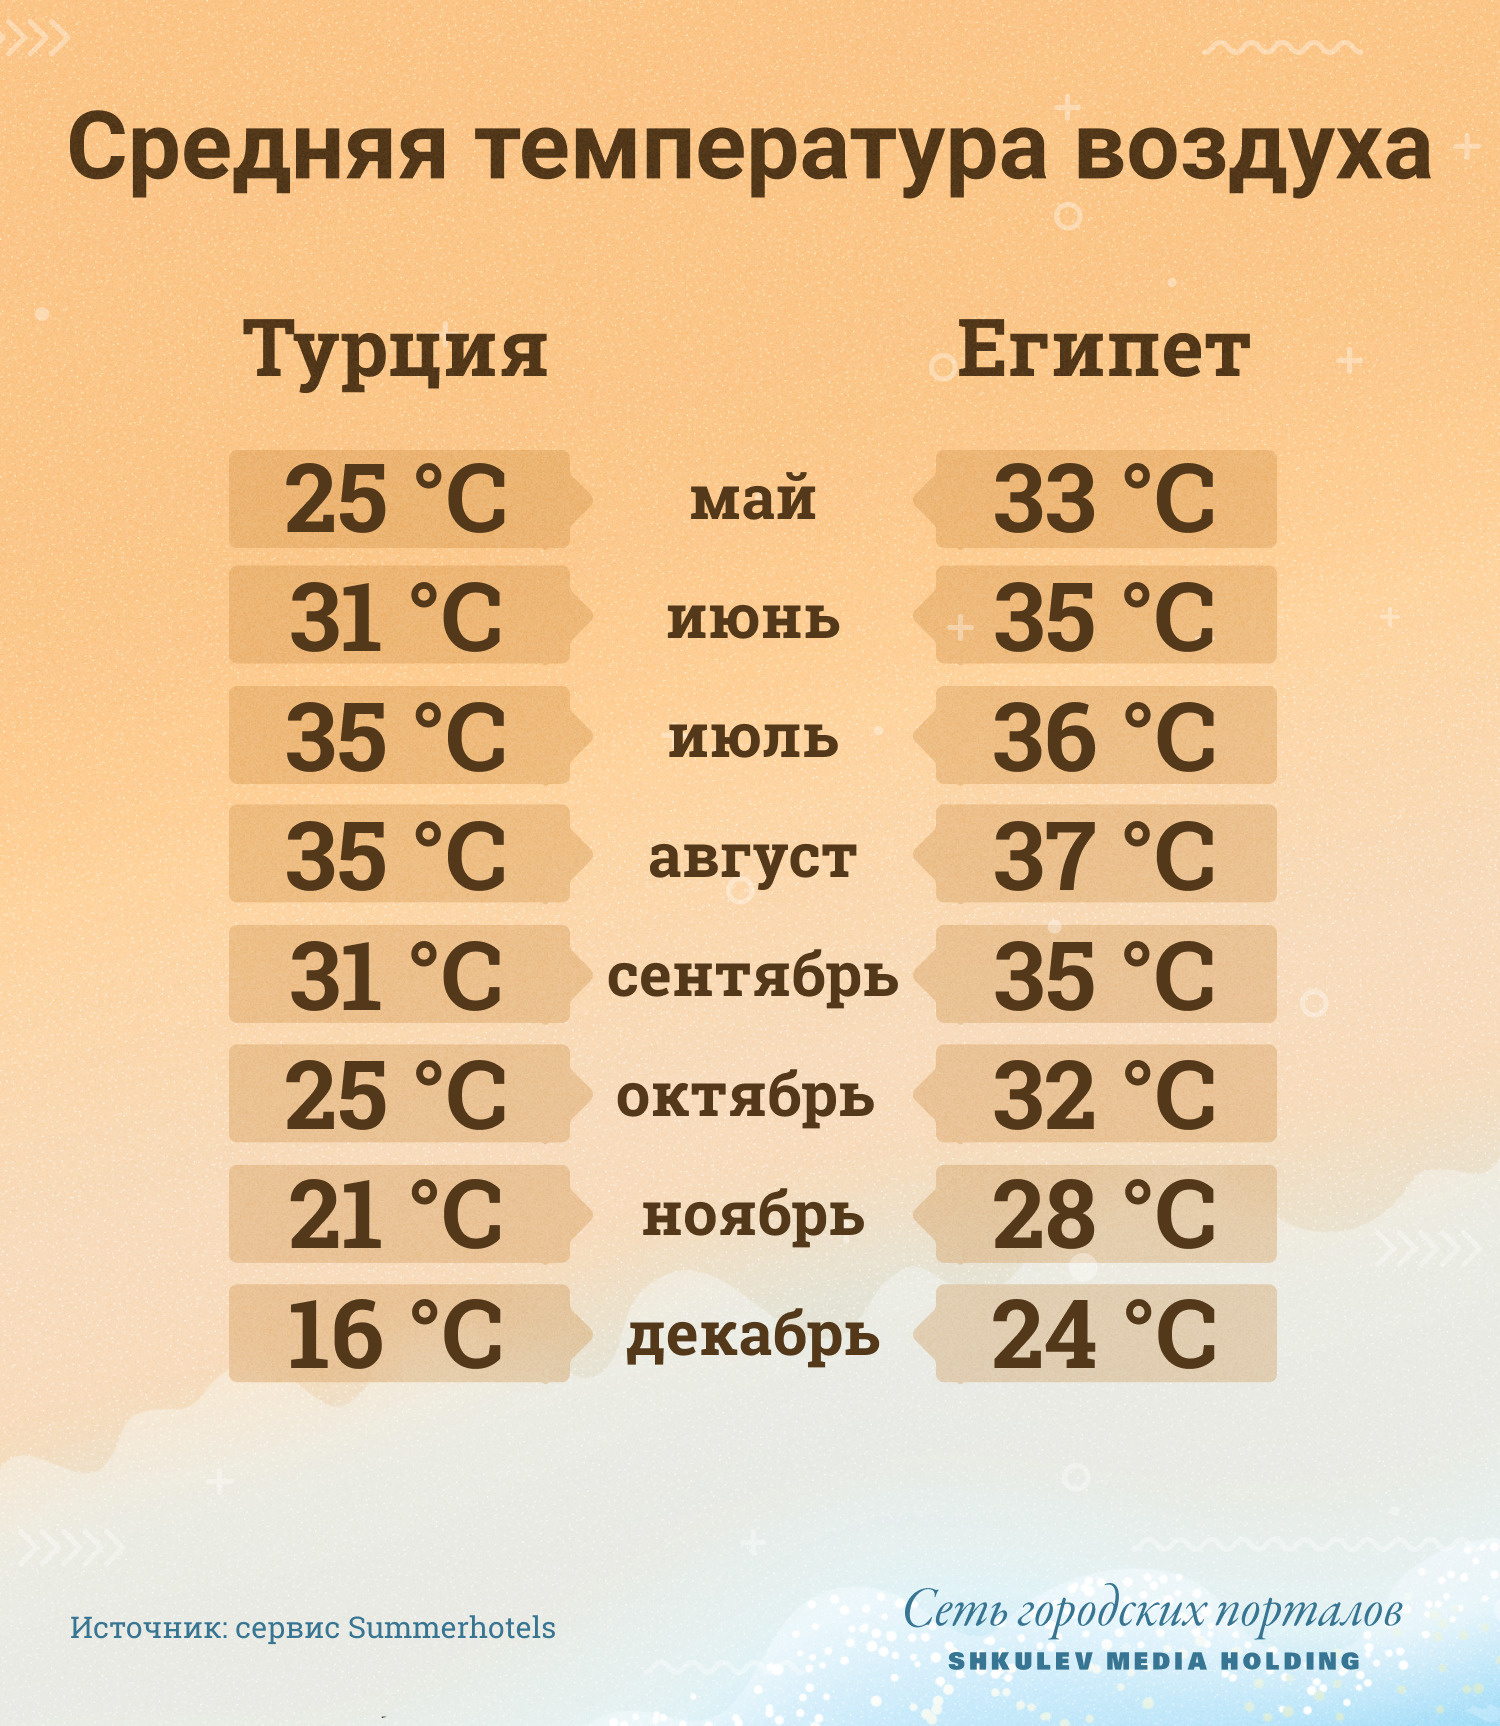 Средняя температура воздуха в Турции и Египте в течение года